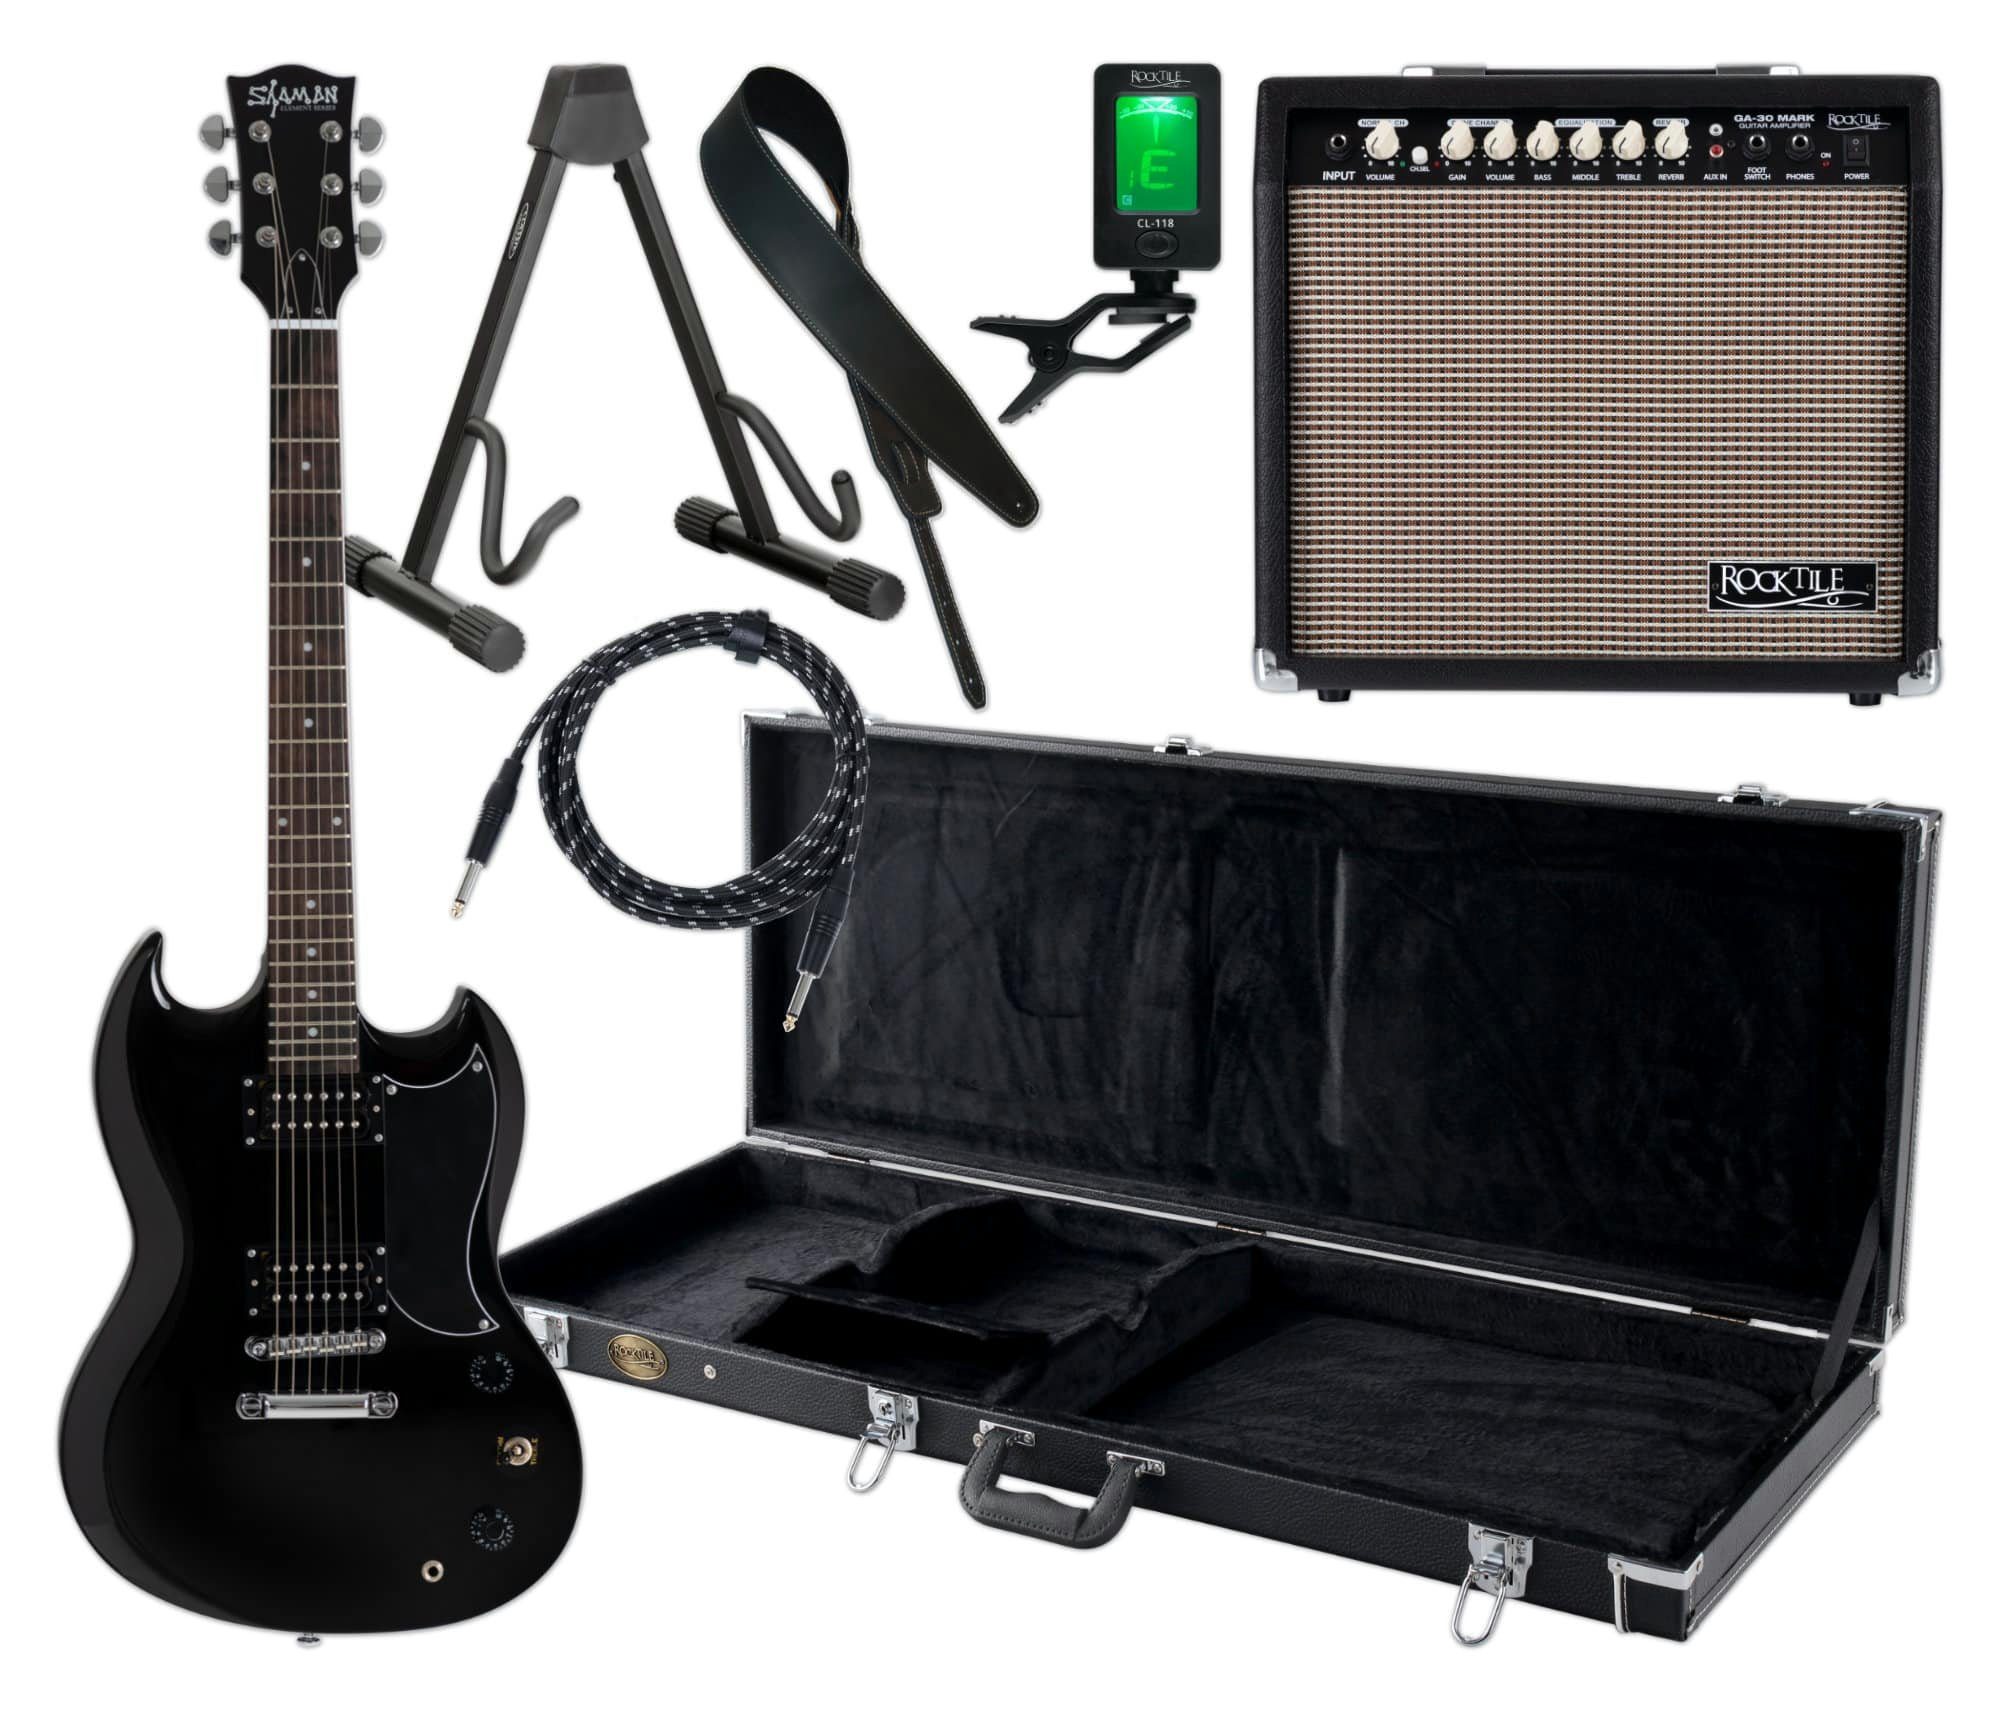 Shaman E-Gitarre DCX-100 - Double Cut-Bauweise - Mahagoni Hals - Macassar-Griffbrett, Komplett Set inkl. Verstärker, Koffer, Ledergurt